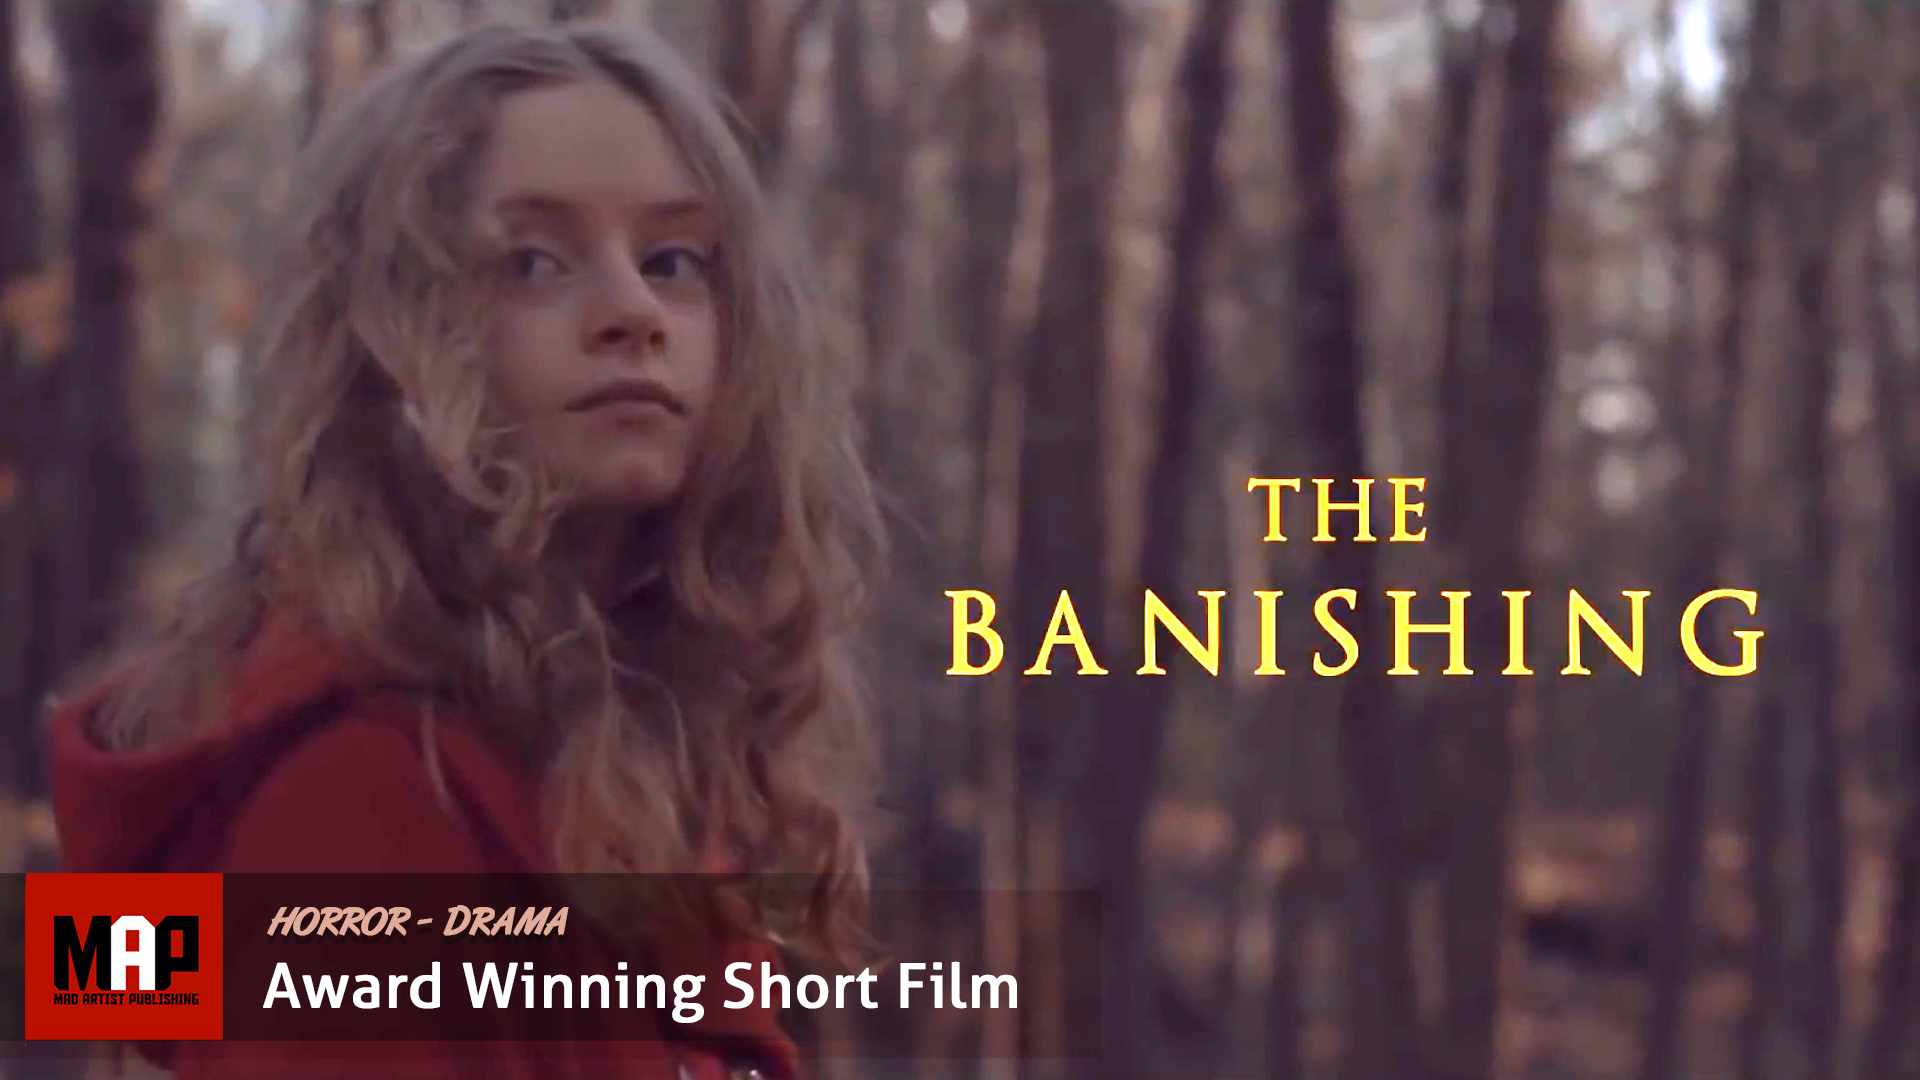 Horror Short Film ** THE BANISHING **  Award Winning Movie By Erlingur Óttar Thoroddsen